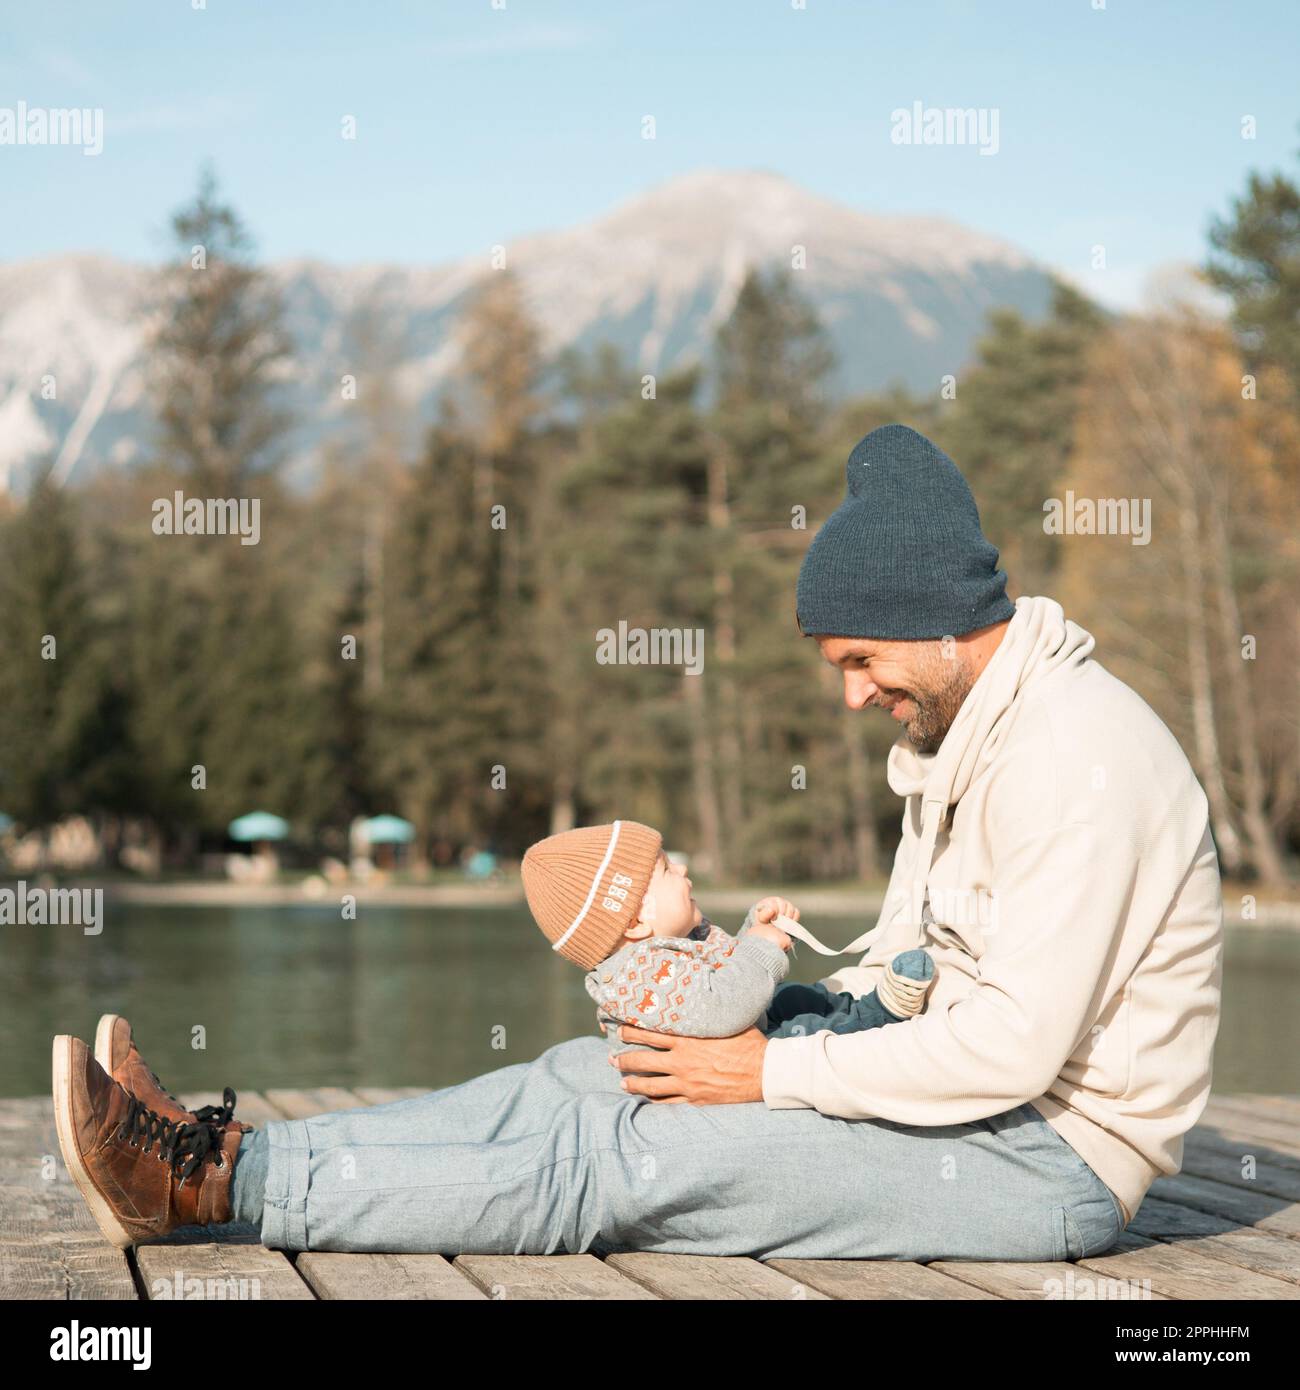 Familia feliz. Padre jugando con su bebé bebé bebé bebé puertas exteriores en el soleado día de otoño. Retrato de papá e hijo pequeño en la plataforma de madera por el lago. Emociones humanas positivas, sentimientos, alegría. Foto de stock